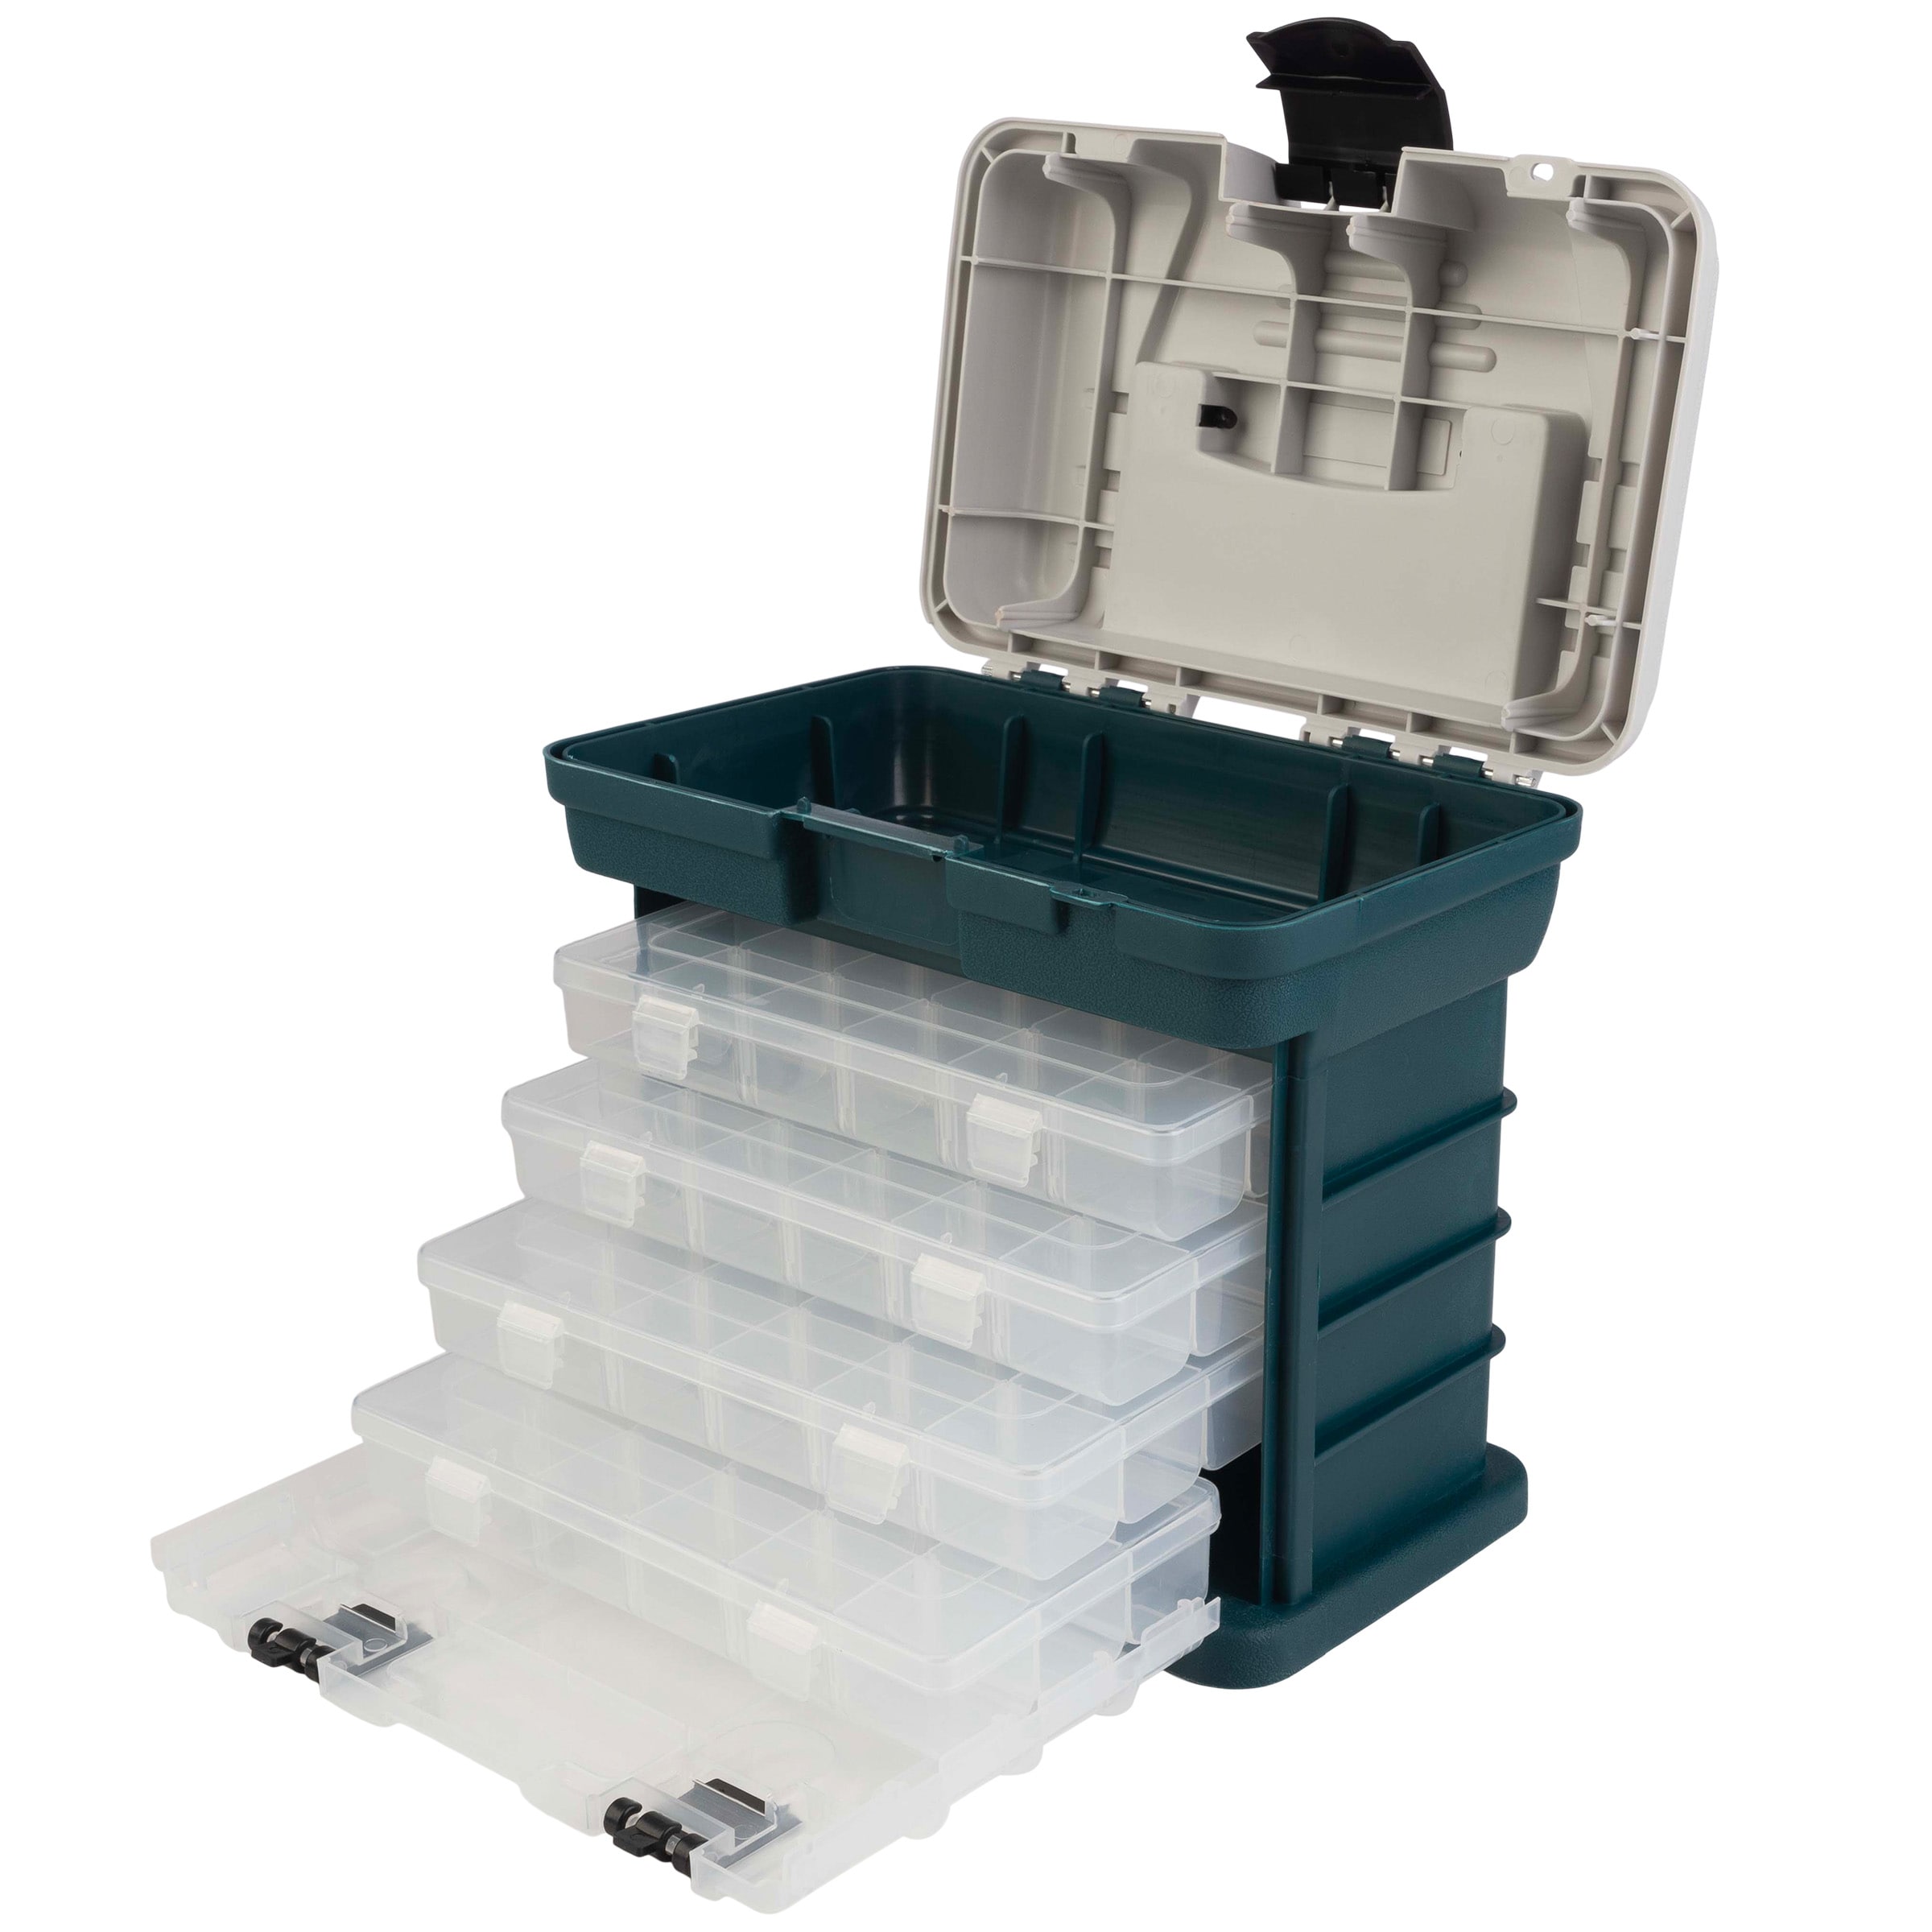 Stalwart Drawer Storage Organizer - Plastic Drawers for Organization -  Hardware, Tools, Beads & Reviews